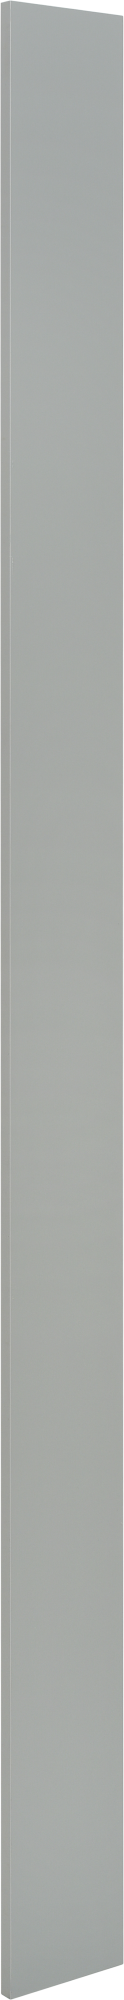 Puerta para mueble de cocina atenas aguamarina brillo h 214.4 x l 15 cm